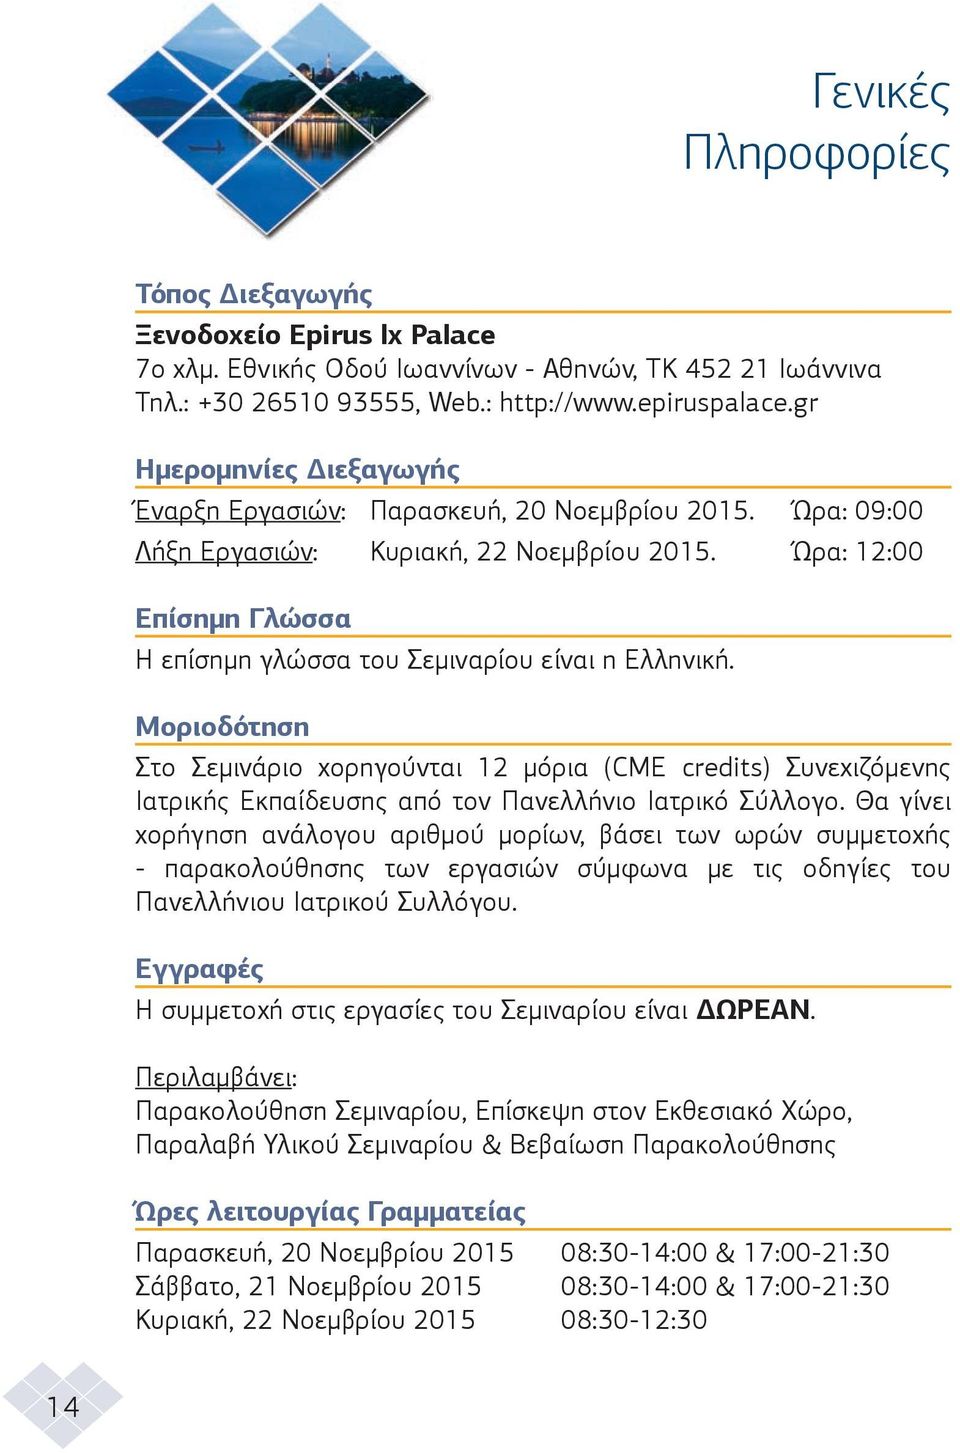 Ώρα: 12:00 Επίσηµη Γλώσσα H επίσηµη γλώσσα του Σεµιναρίου είναι η Ελληνική.